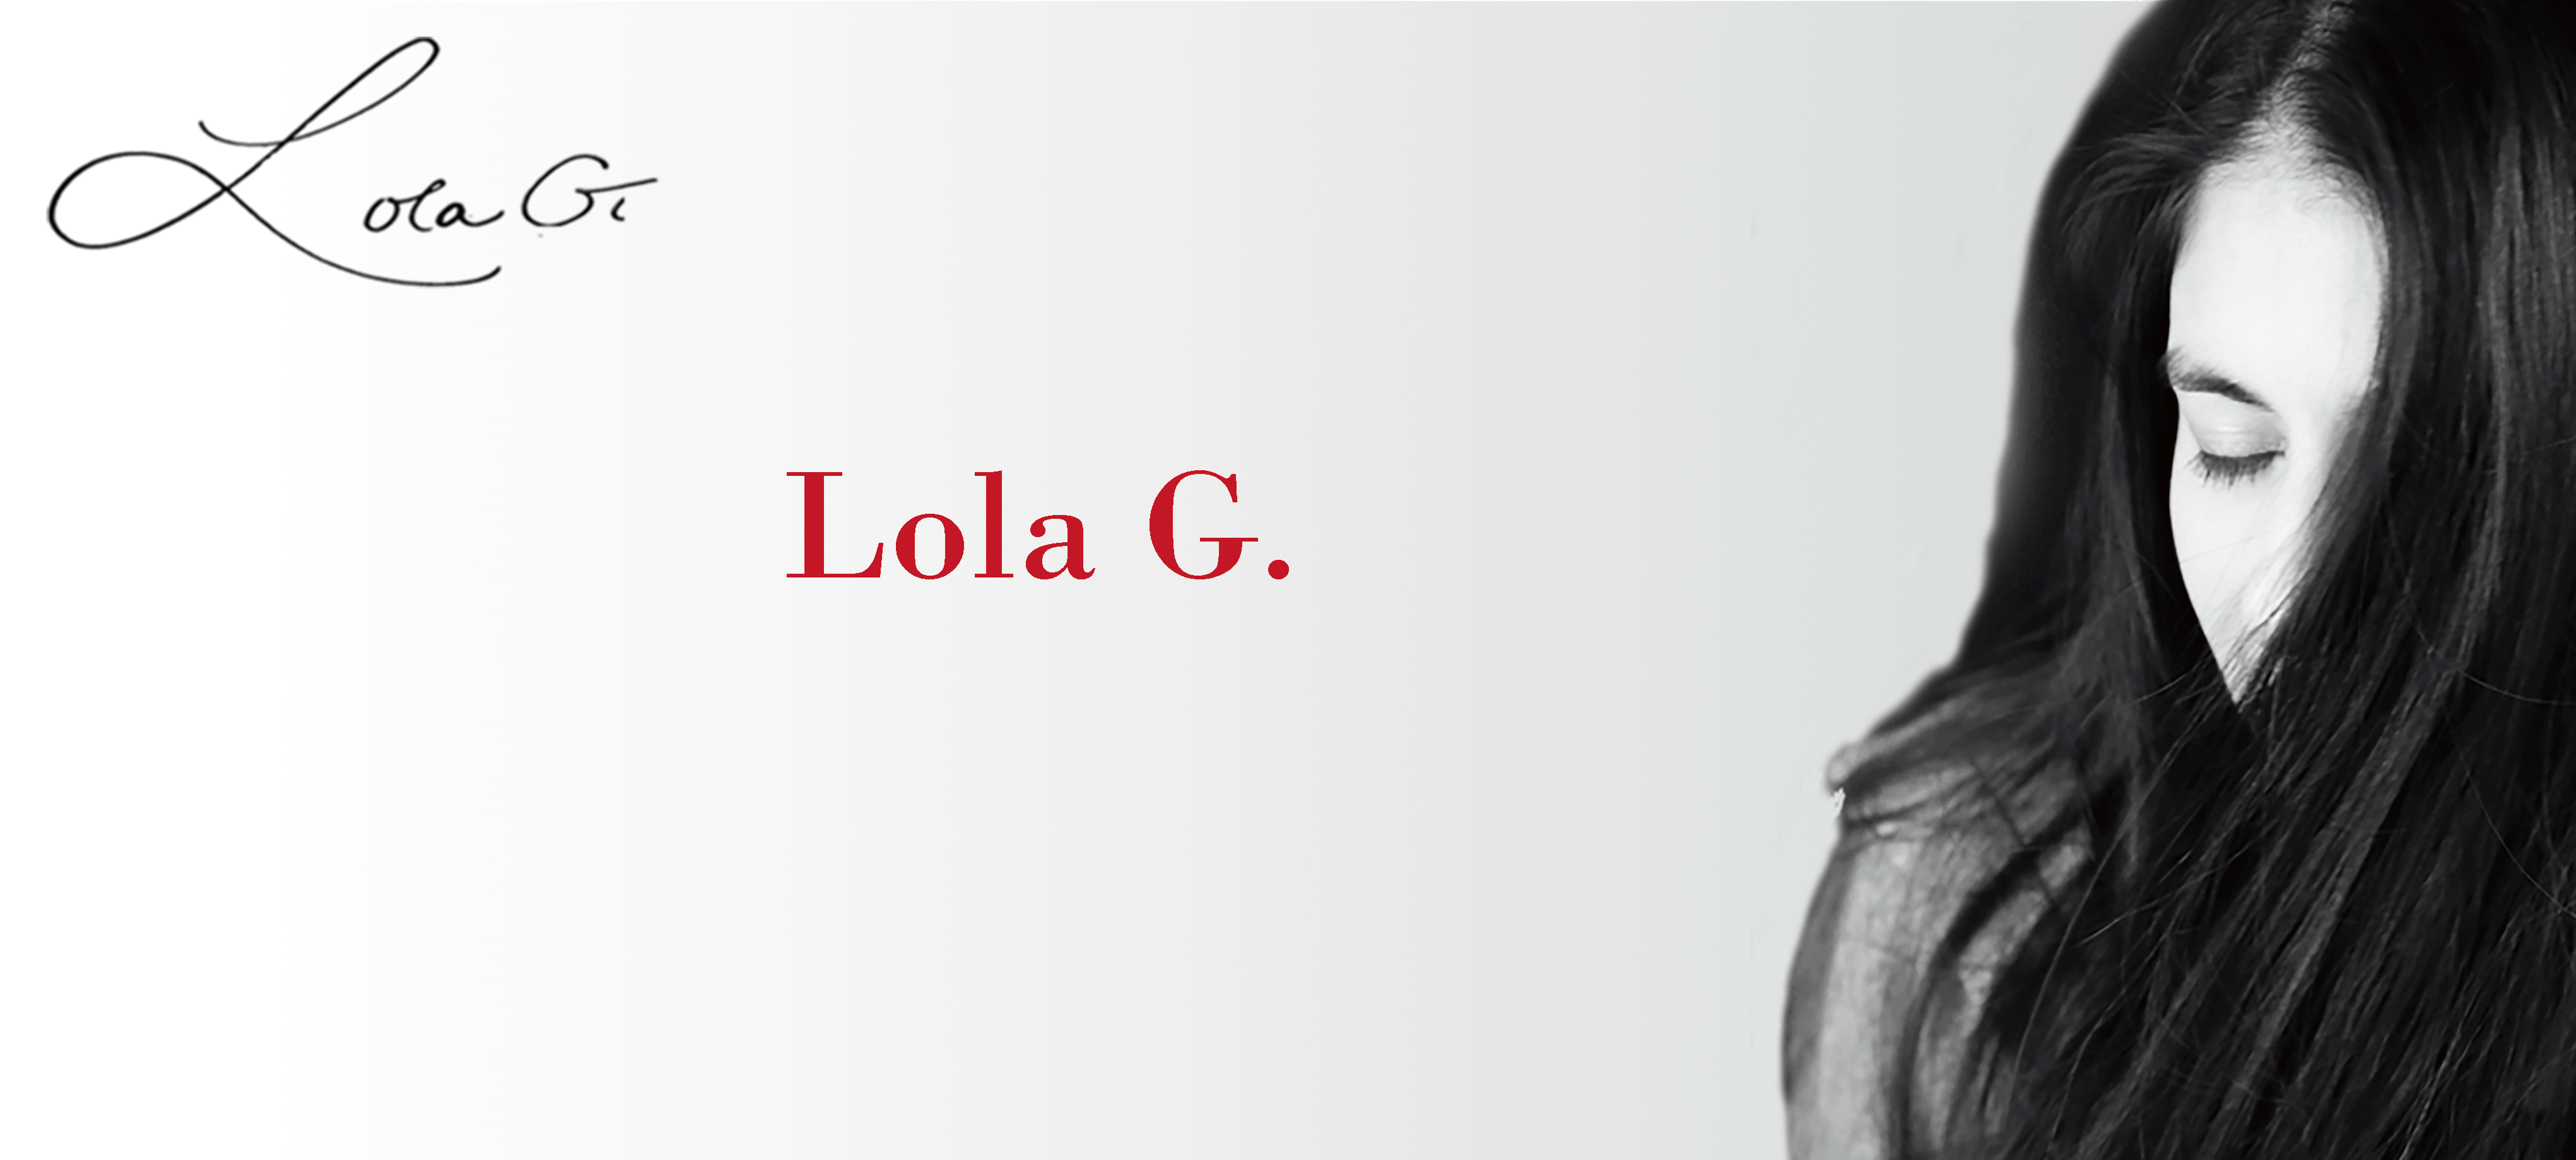 Lola G.